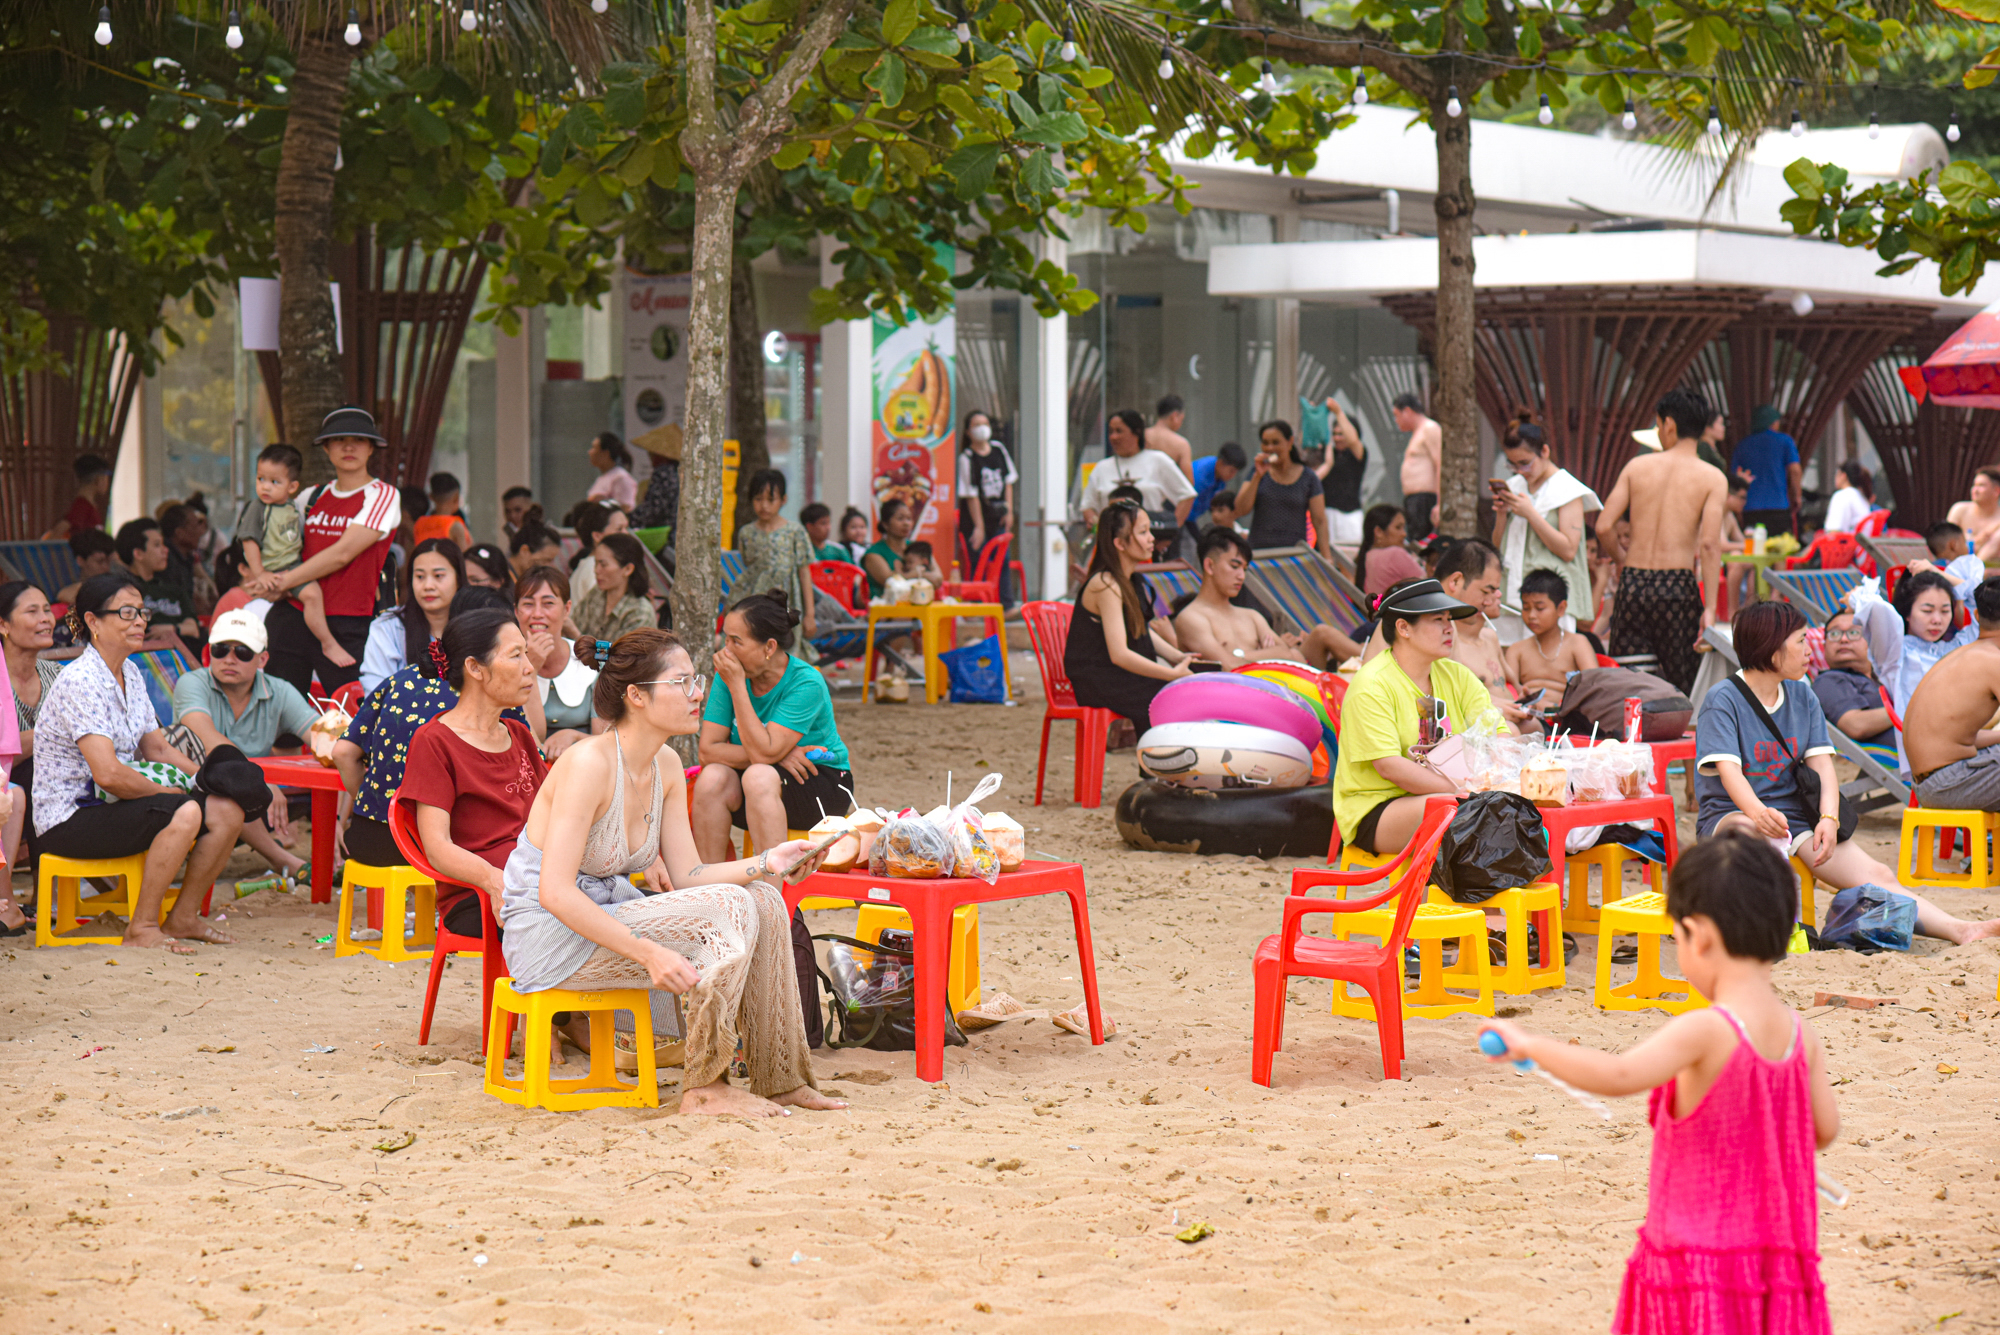 Bãi biển Sầm Sơn ken đặc người đổ về giải nhiệt, du khách nói 3 lý do quyết lựa chọn nơi này- Ảnh 9.